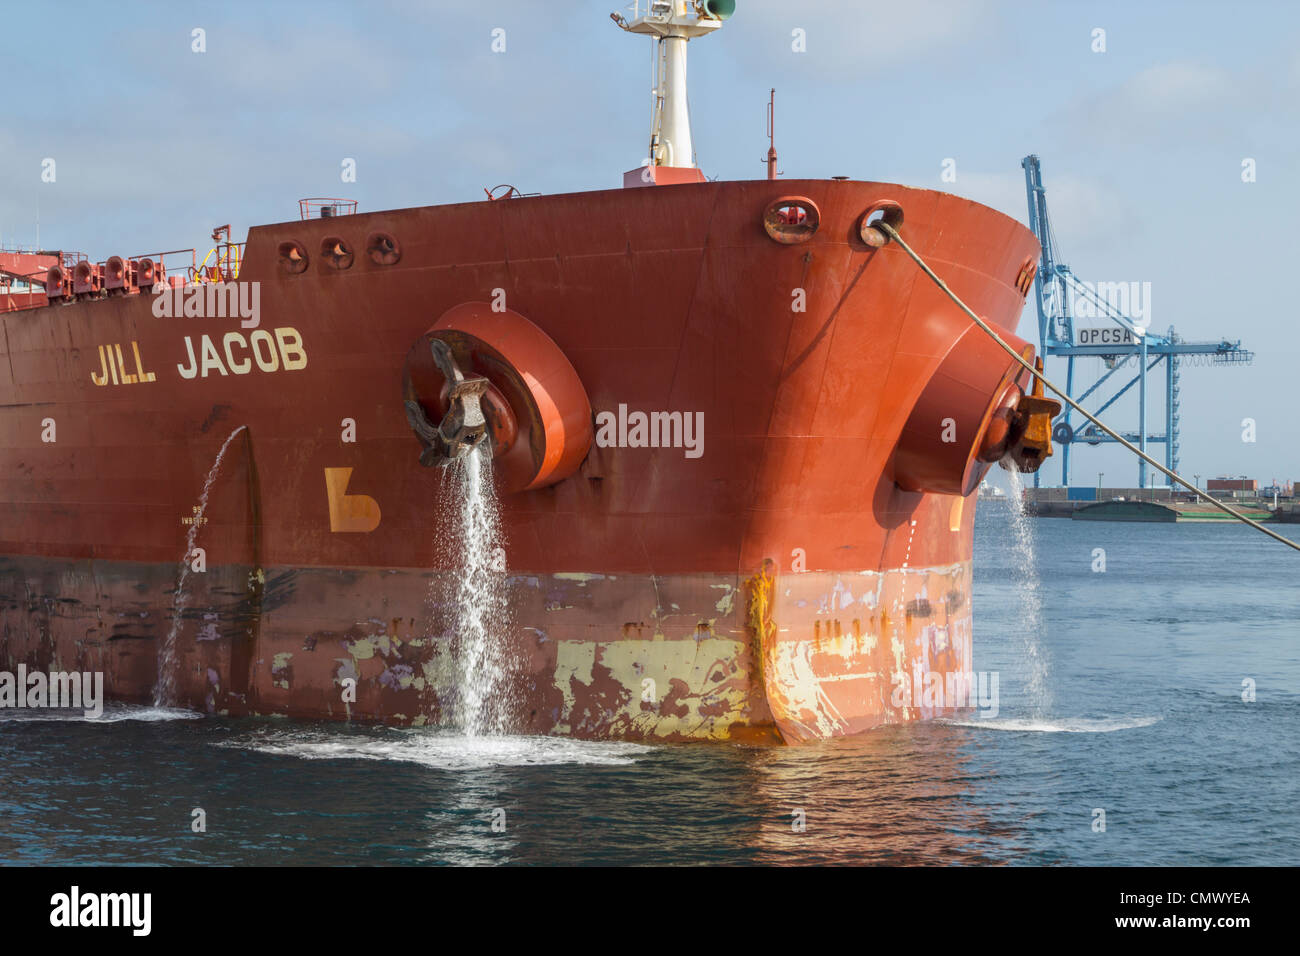 Oil tanker emptying ballast water as it arrives in port Stock Photo